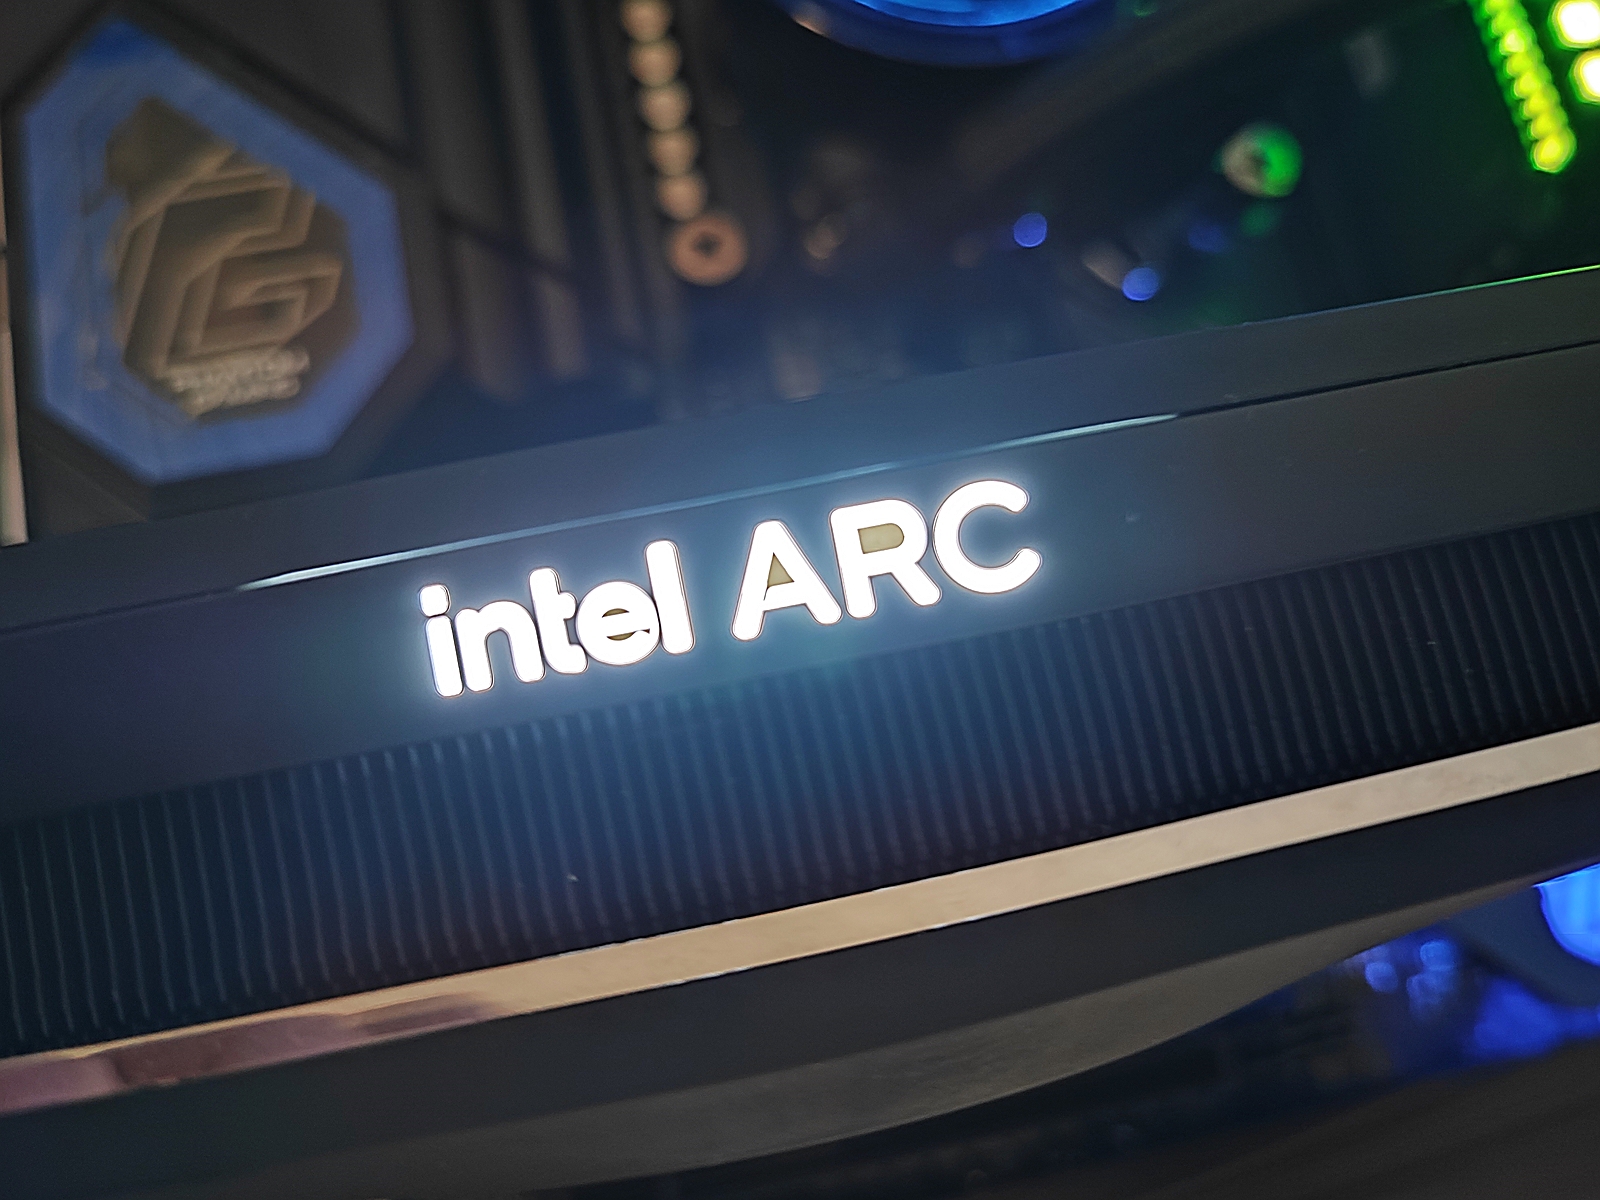 Intel ARC A750e